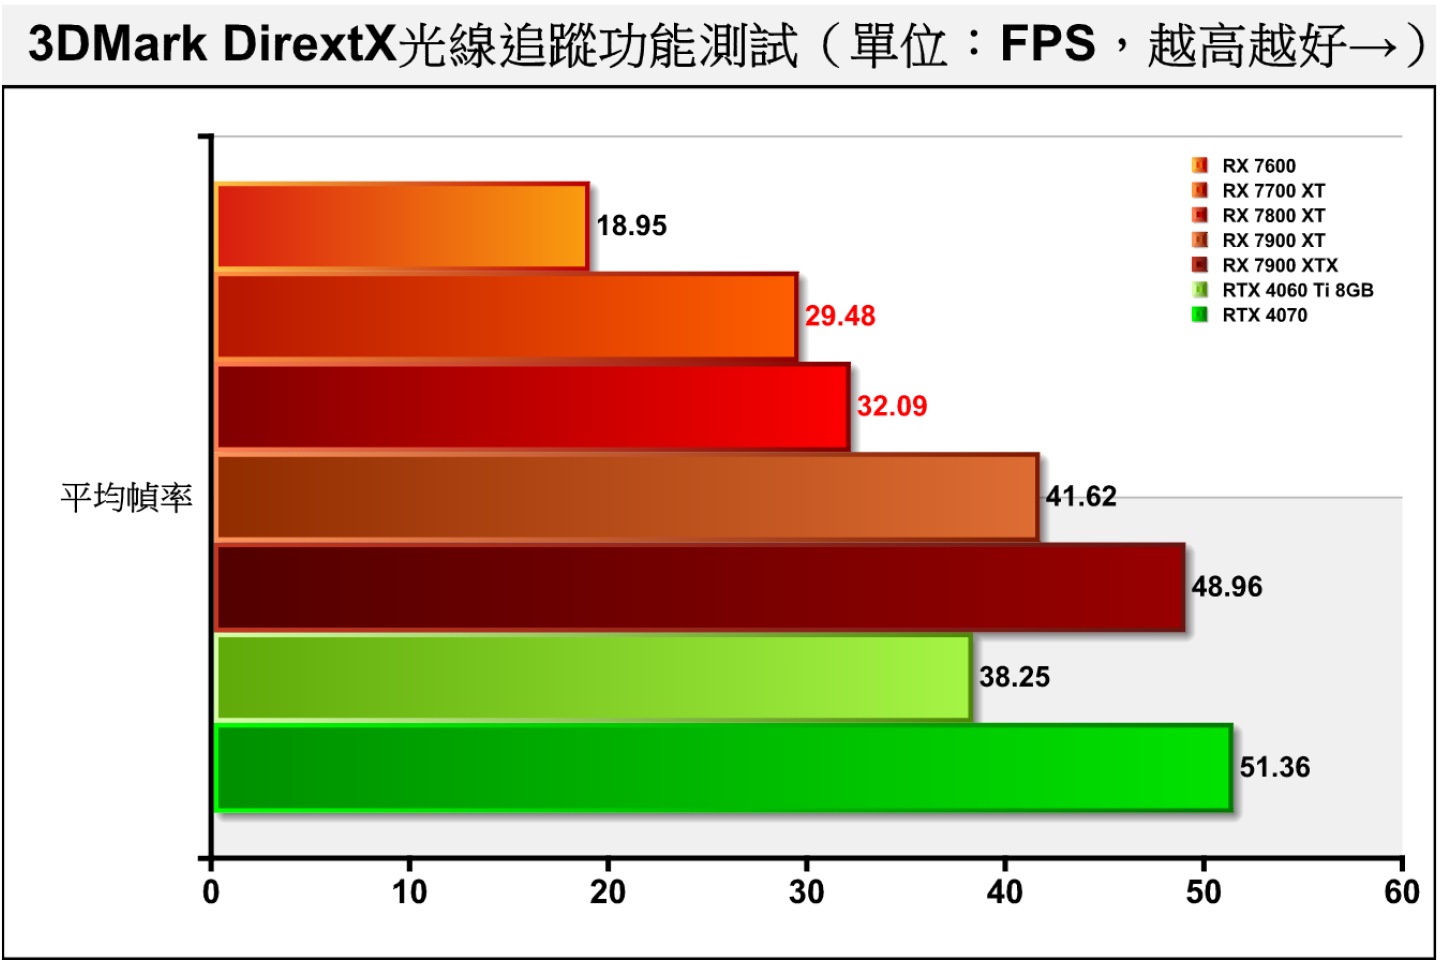 3DMark DirextX光線追蹤功能測試同樣採用DXR技術，2者的成績分別落後37.51%、22.92%。